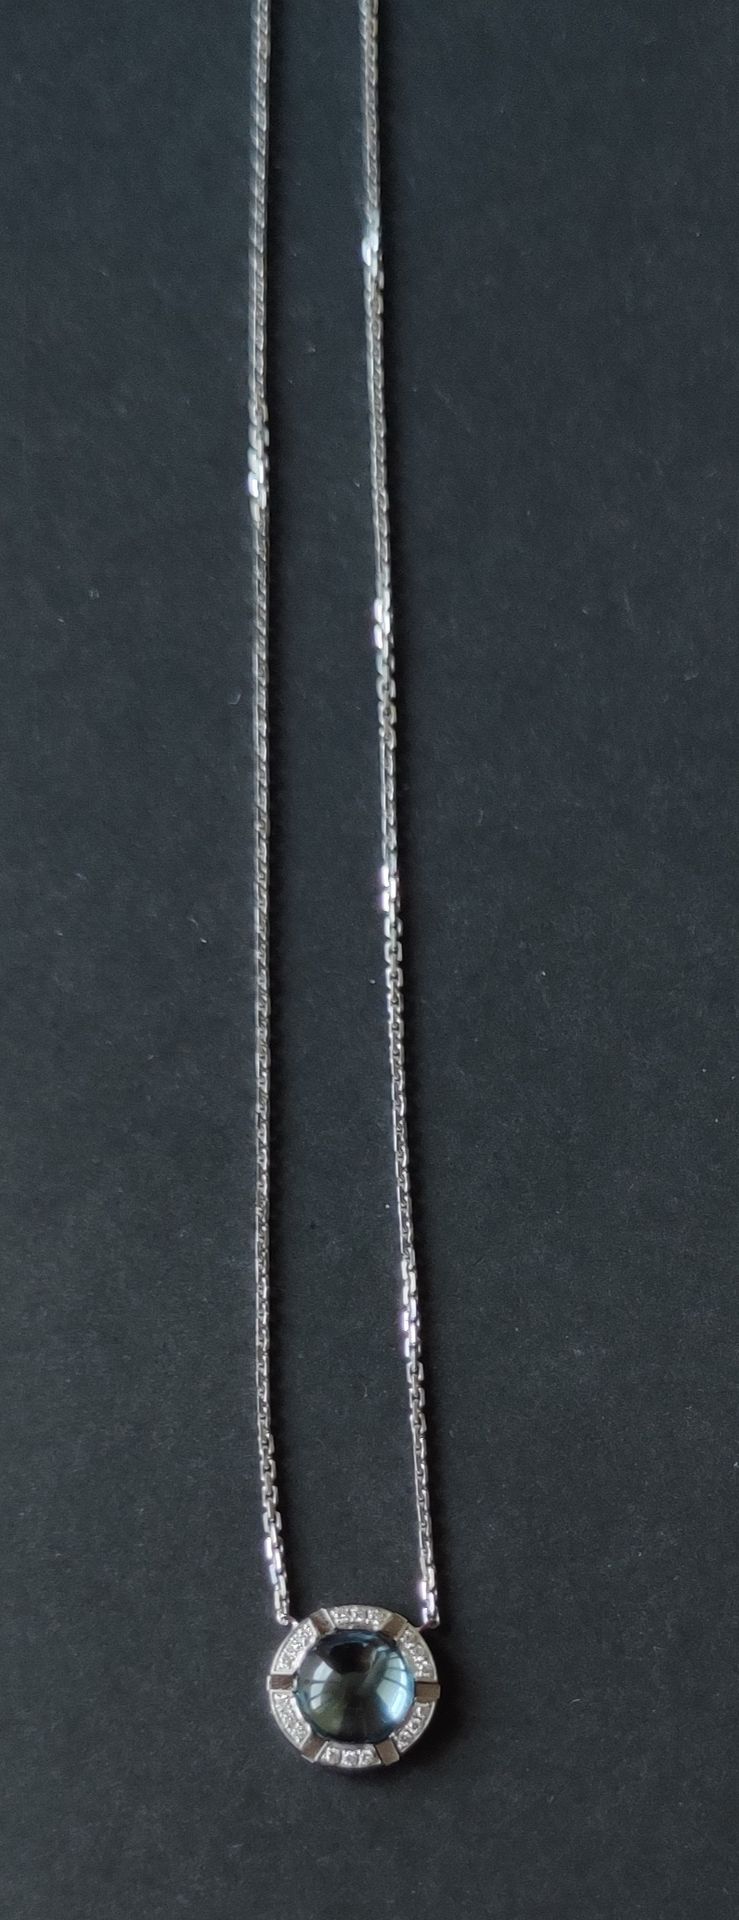 Null 巴黎CHAUMET

一条白金项链，链子支撑着一个圆形的图案，上面镶嵌着一颗凸圆形的蓝宝石，并有小的切割钻石，背面有标记和编号。

毛重：6.8克